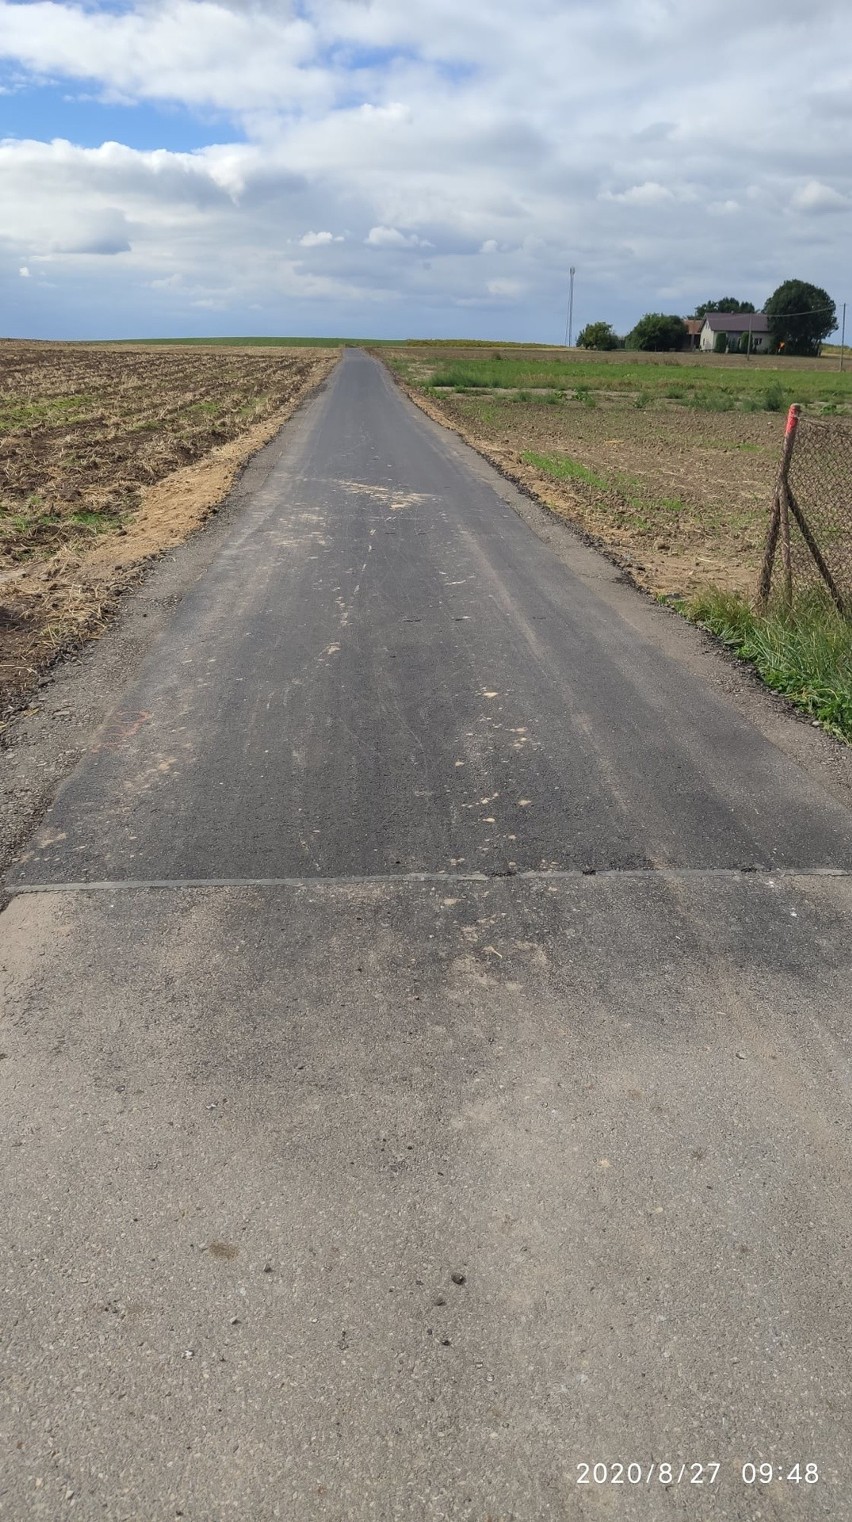 W gminie Słomniki wyremontowano sześć dróg rolniczych. Będzie łatwiej dojechać do pól